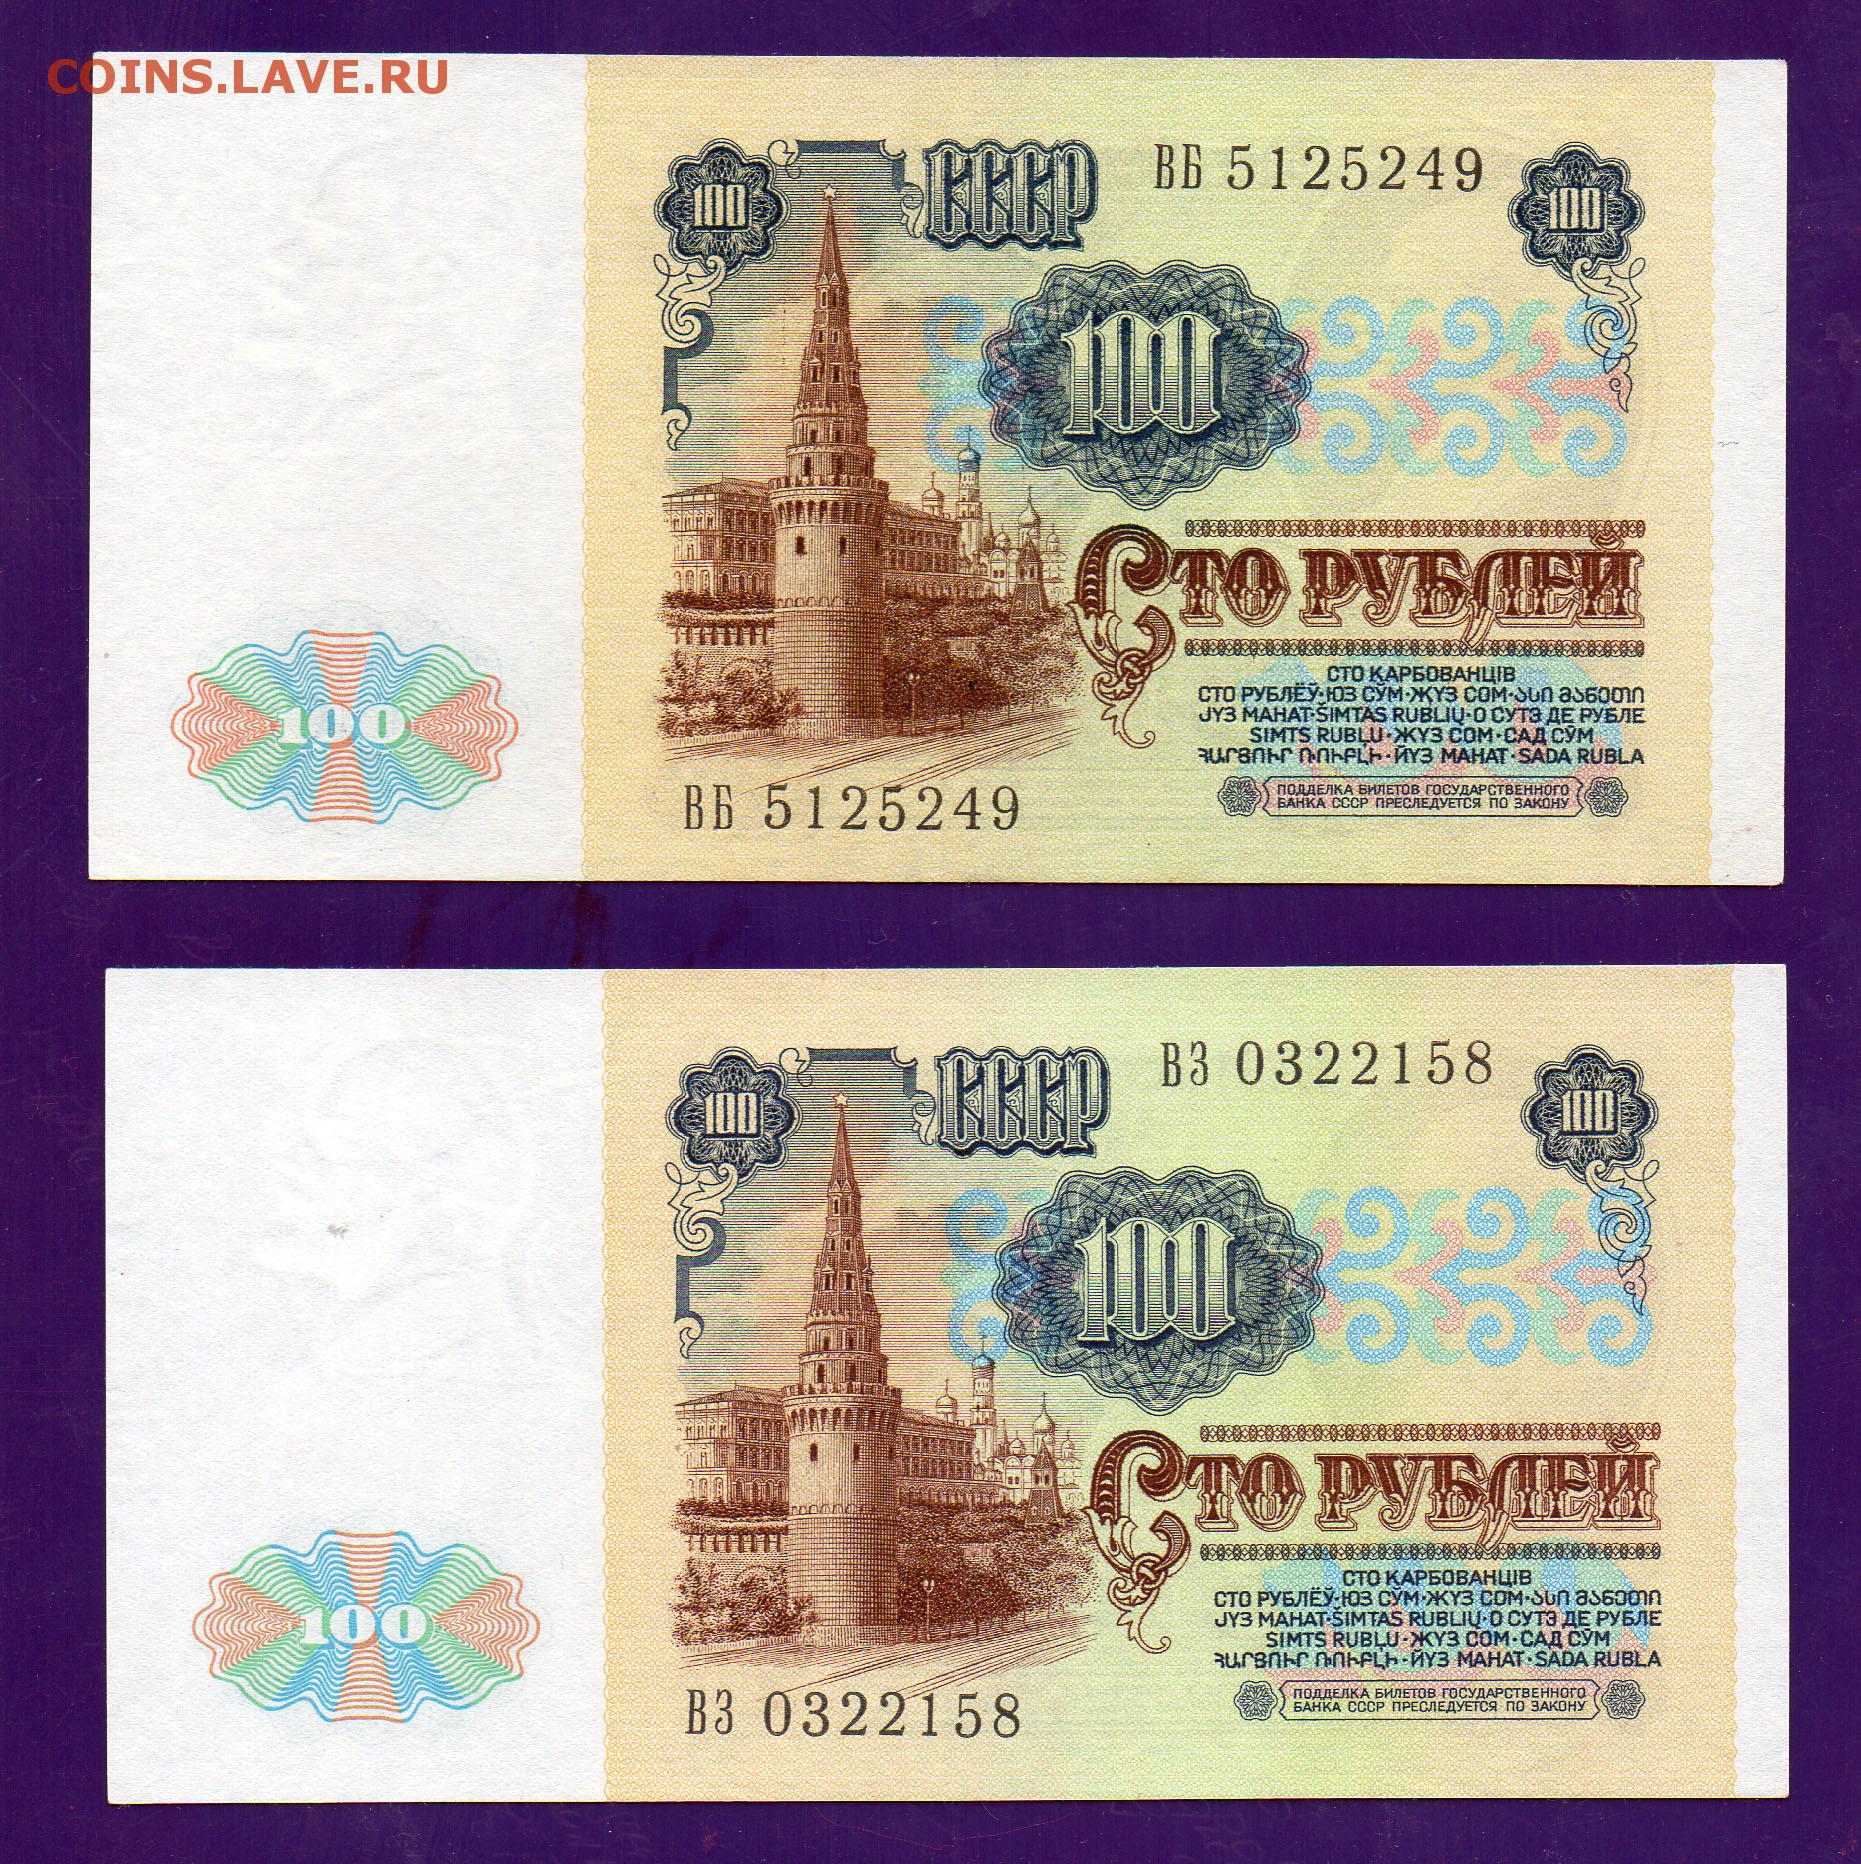 Сум на российские рубли. 100 Рублей 1991. СТО рублей 1961 года. 100 Рублей 1991 бя.